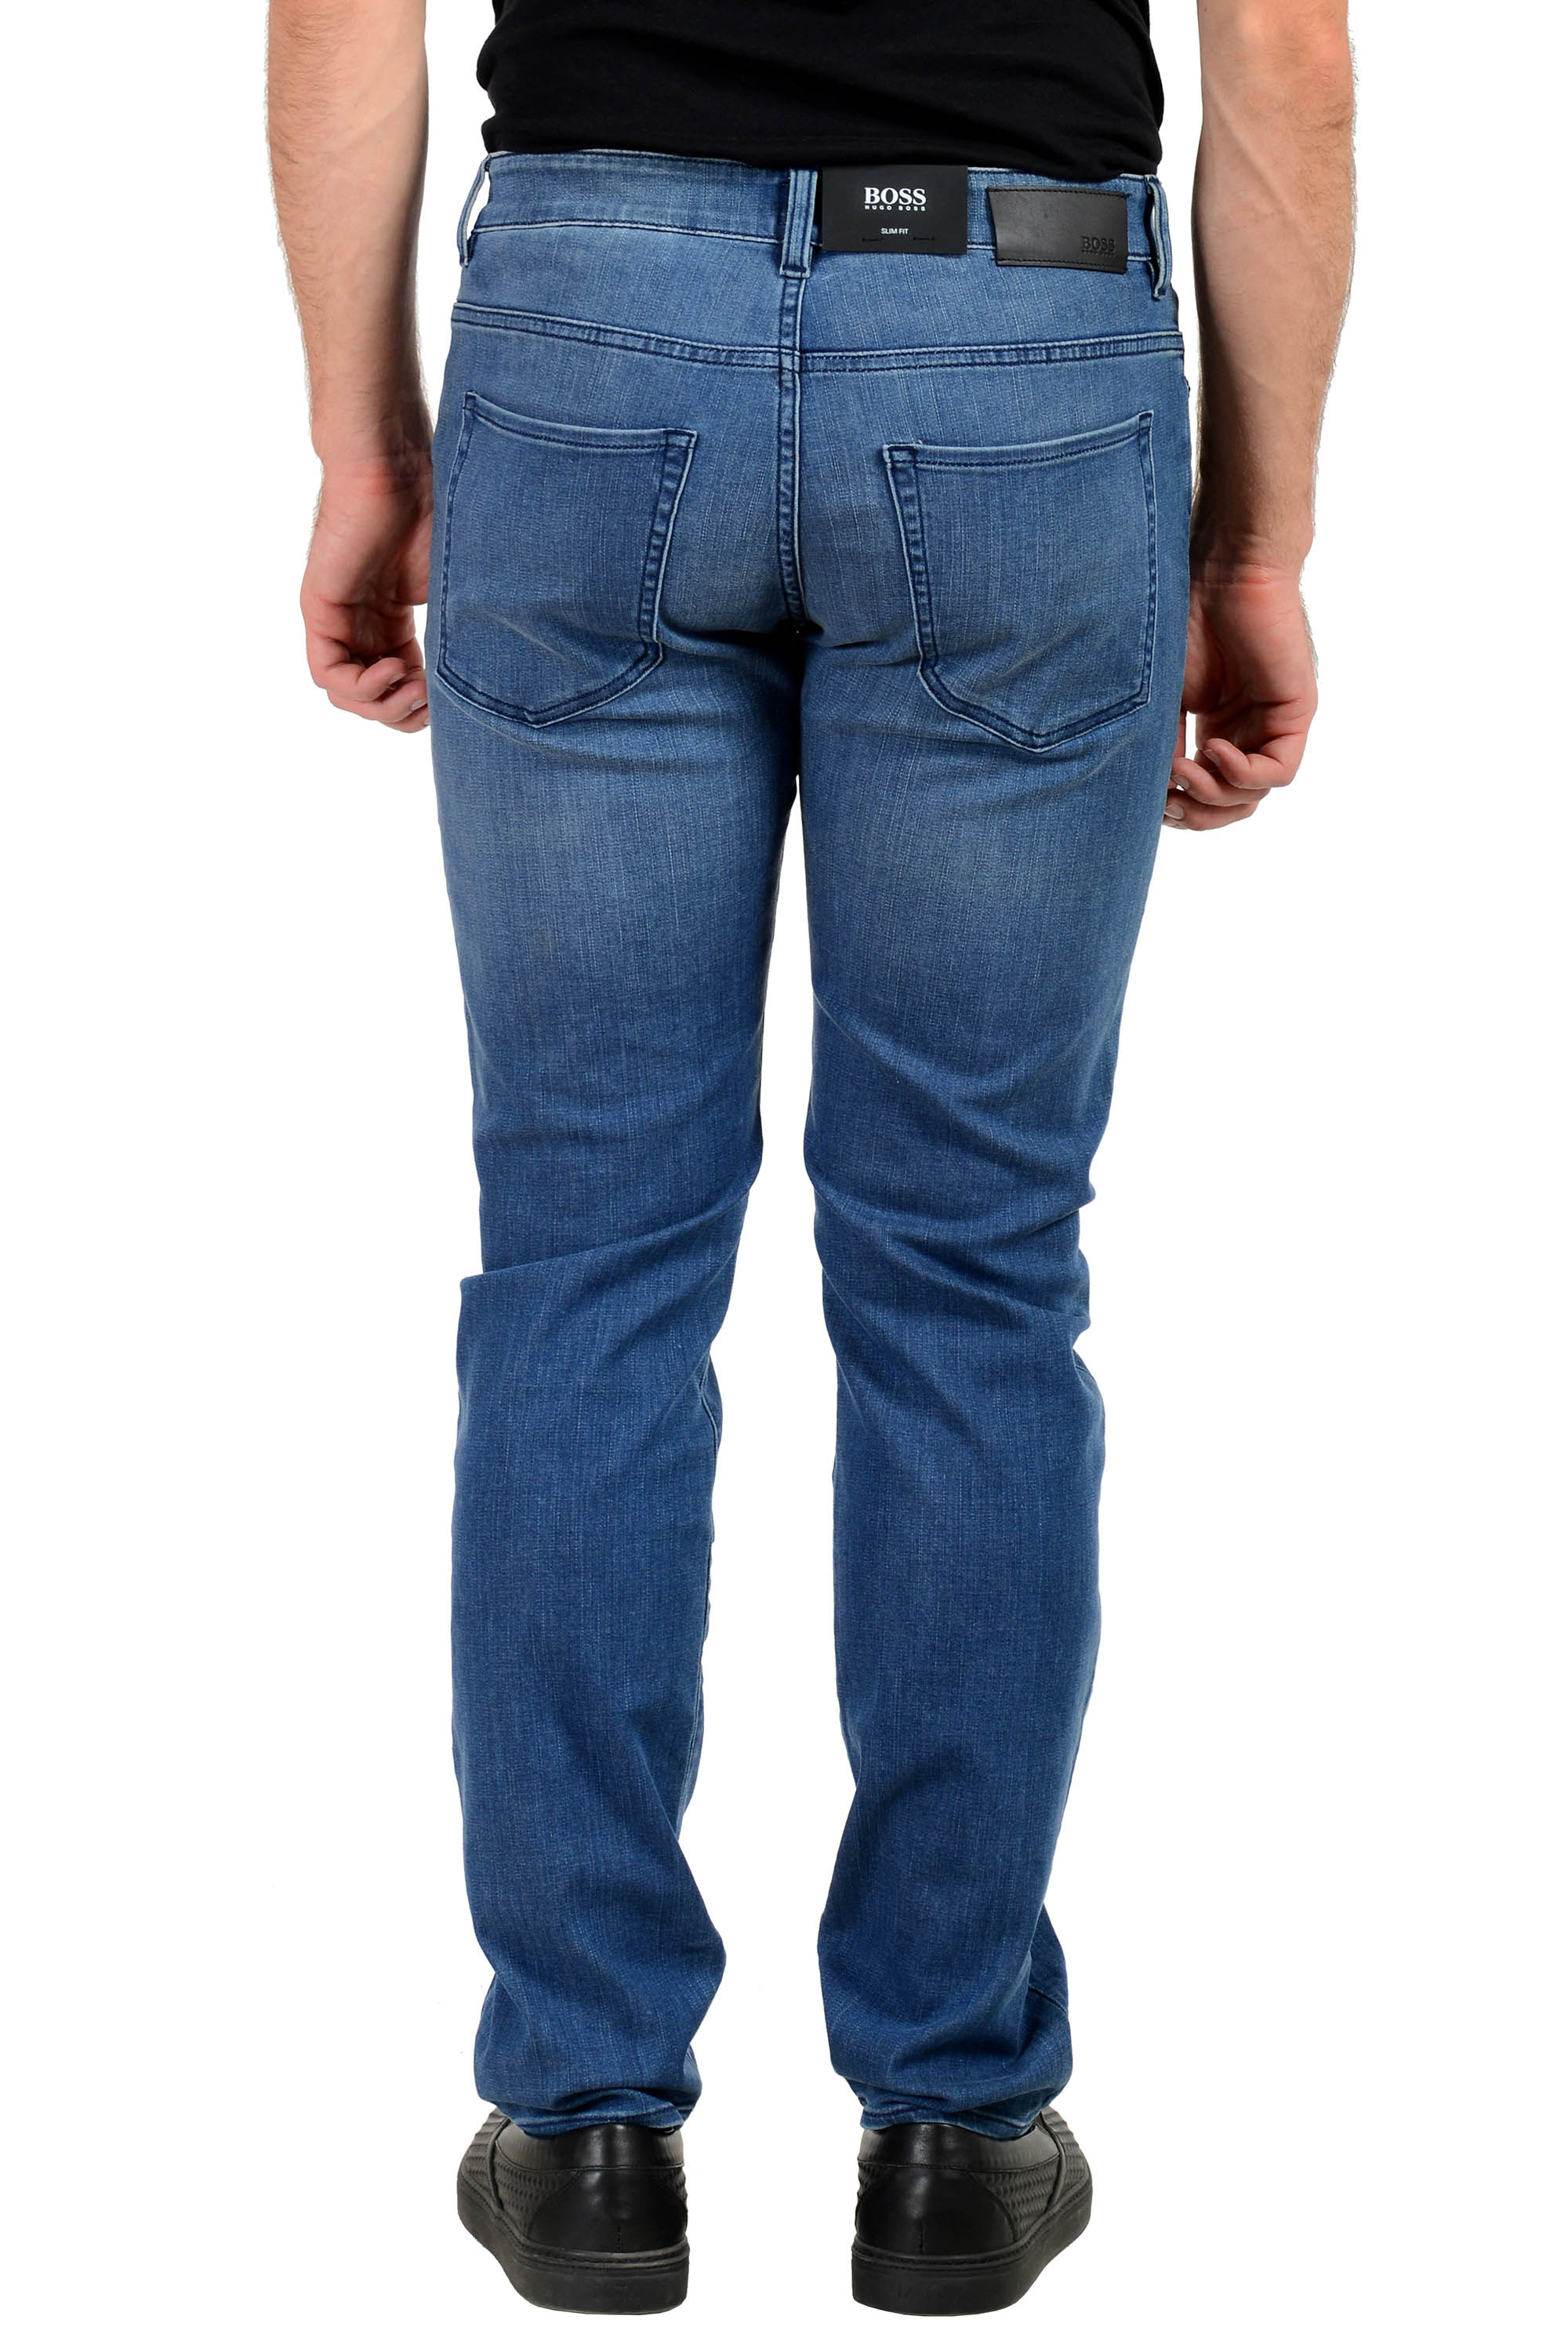 Afslut Kære Styring Hugo Boss Men's "Delaware3-1"Slim Fit Medium Blue Wash Stretch Jeans